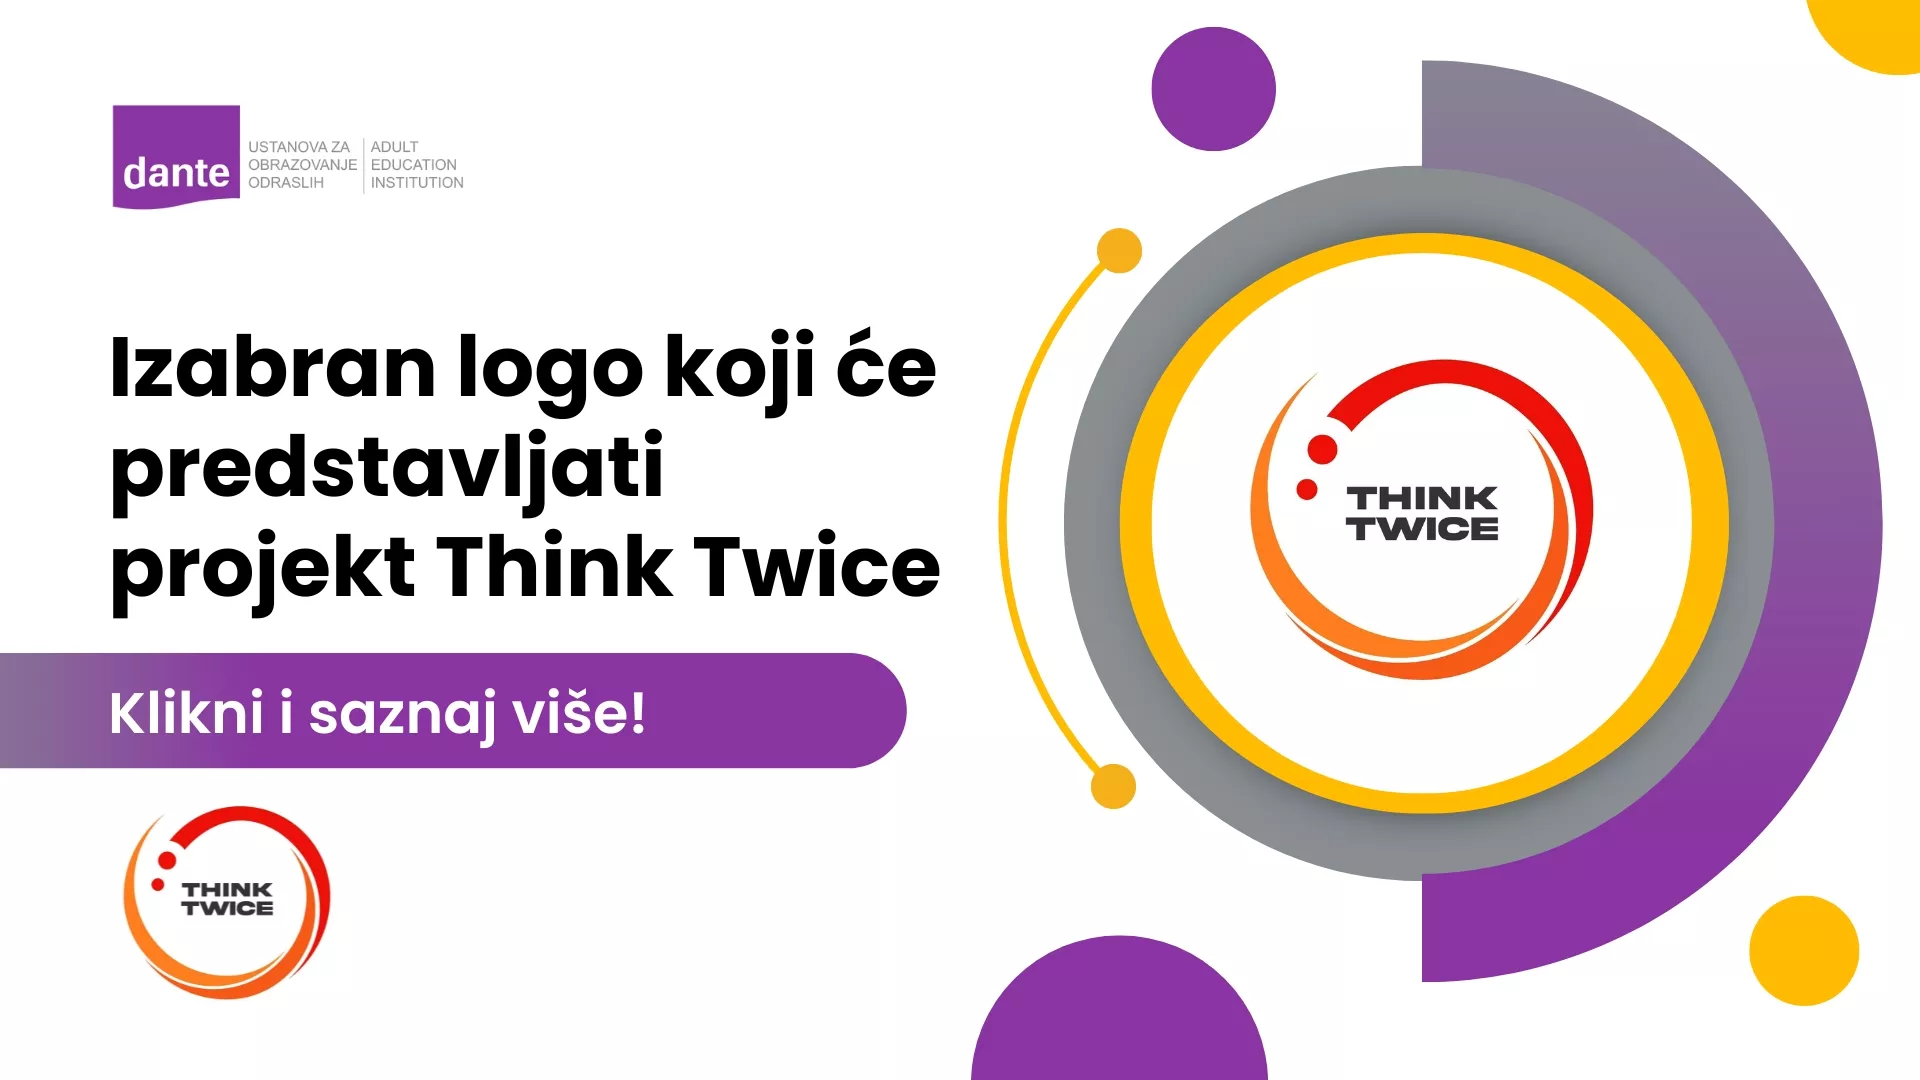 Izabran logo koji će predstavljati projekt Think Twice.